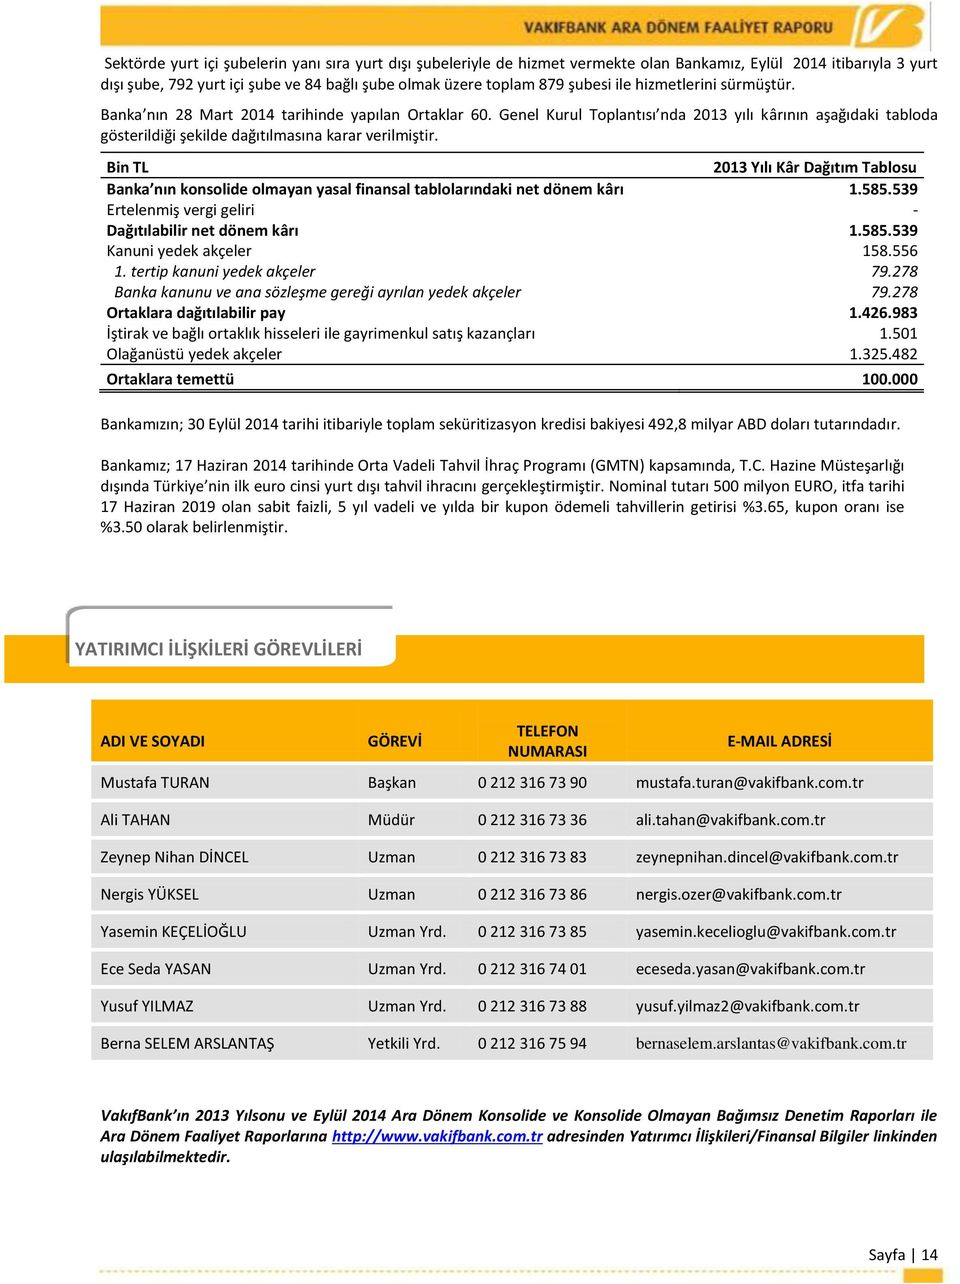 Bin TL 2013 Yılı Kâr Dağıtım Tablosu Banka nın konsolide olmayan yasal finansal tablolarındaki net dönem kârı 1.585.539 Ertelenmiş vergi geliri - Dağıtılabilir net dönem kârı 1.585.539 Kanuni yedek akçeler 158.